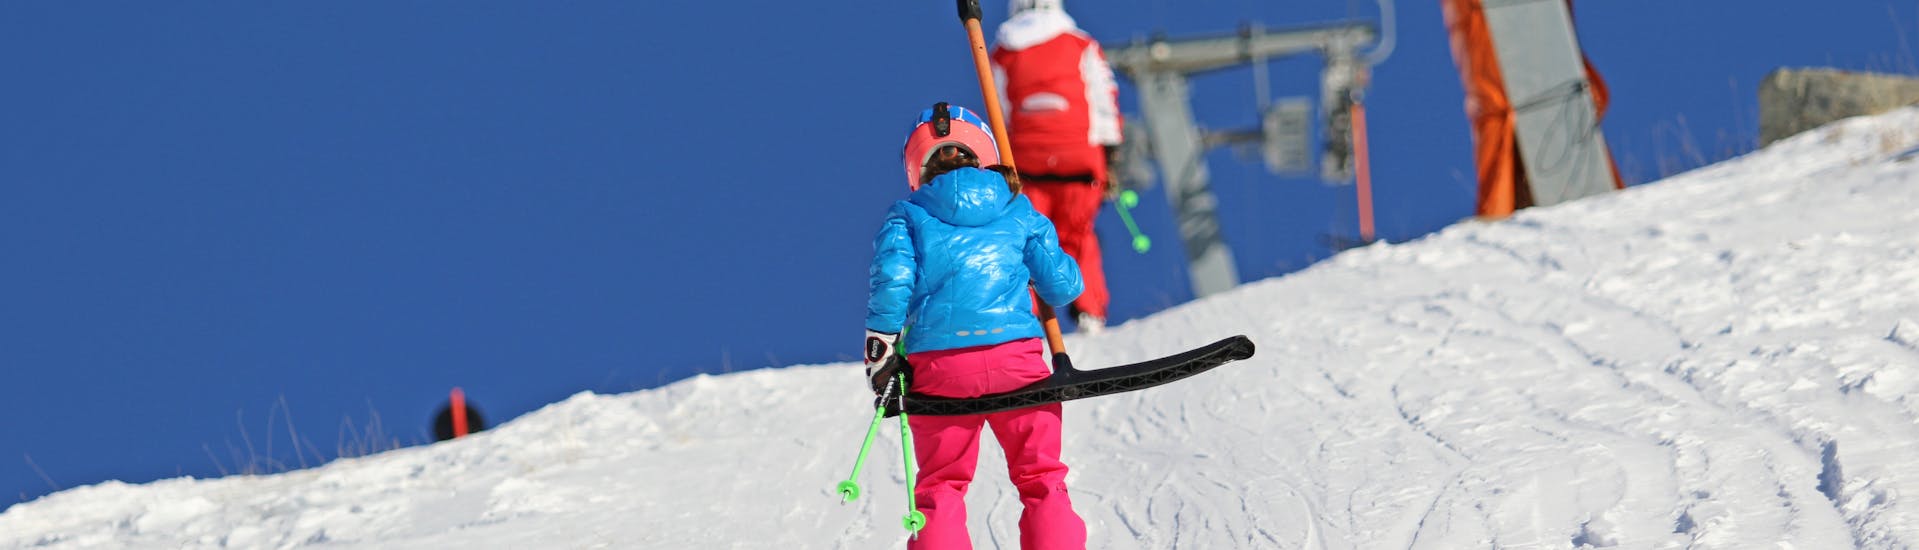 Privé skilessen voor kinderen - Serfaus-Fiss-Ladis.